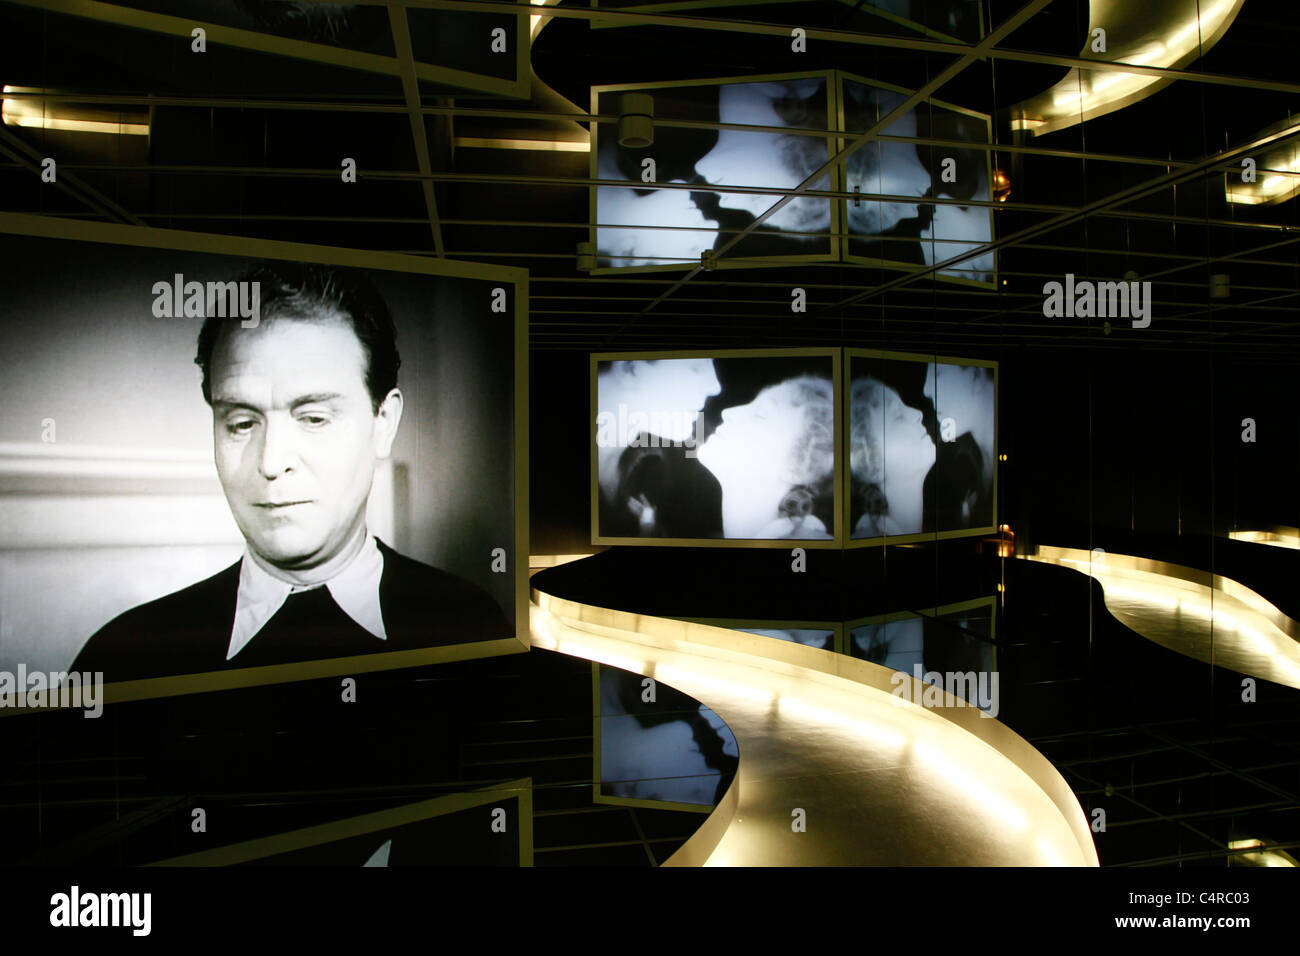 Instalación de monitores que muestran antiguas películas clásicas alemanas  en el interior del Museo Deutsche Kinemathek Fur Film und Fernsehen,  conocido como Filmhaus, que alberga el Museo de Cine y Televisión de